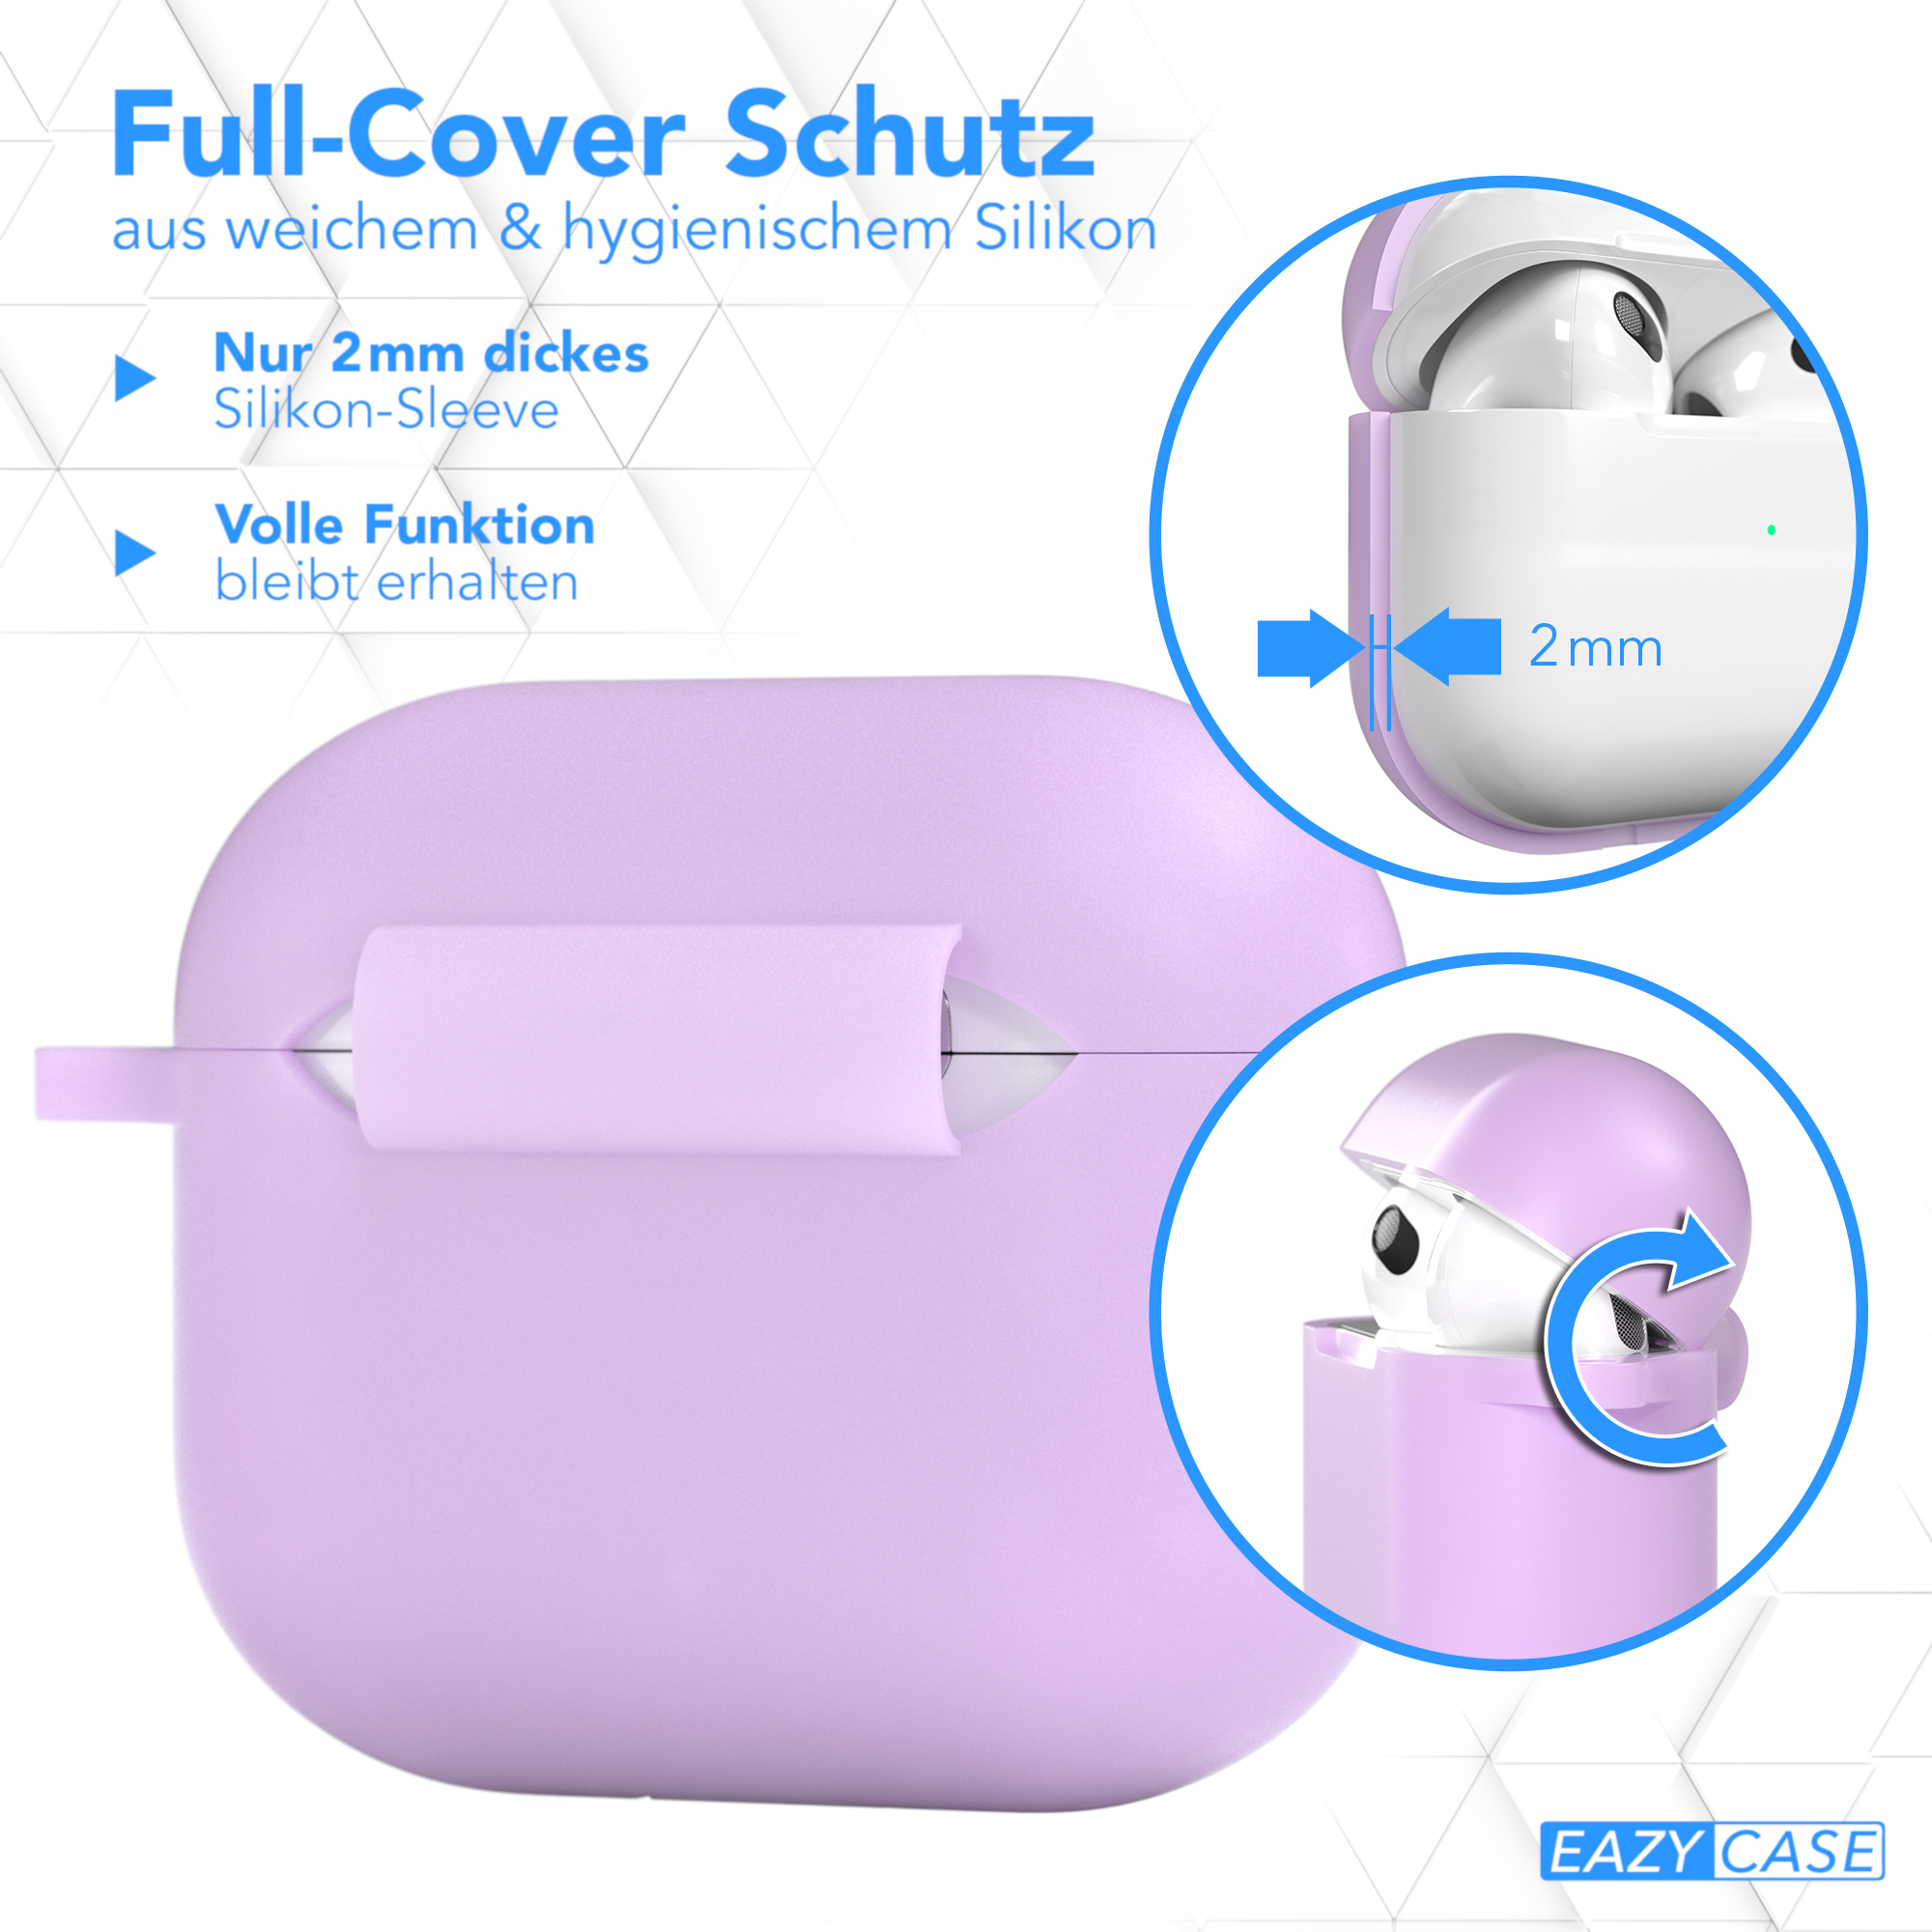 Schutzhülle Sleeve Silikon für: Apple / Violett passend 3 Flieder CASE AirPods Case EAZY